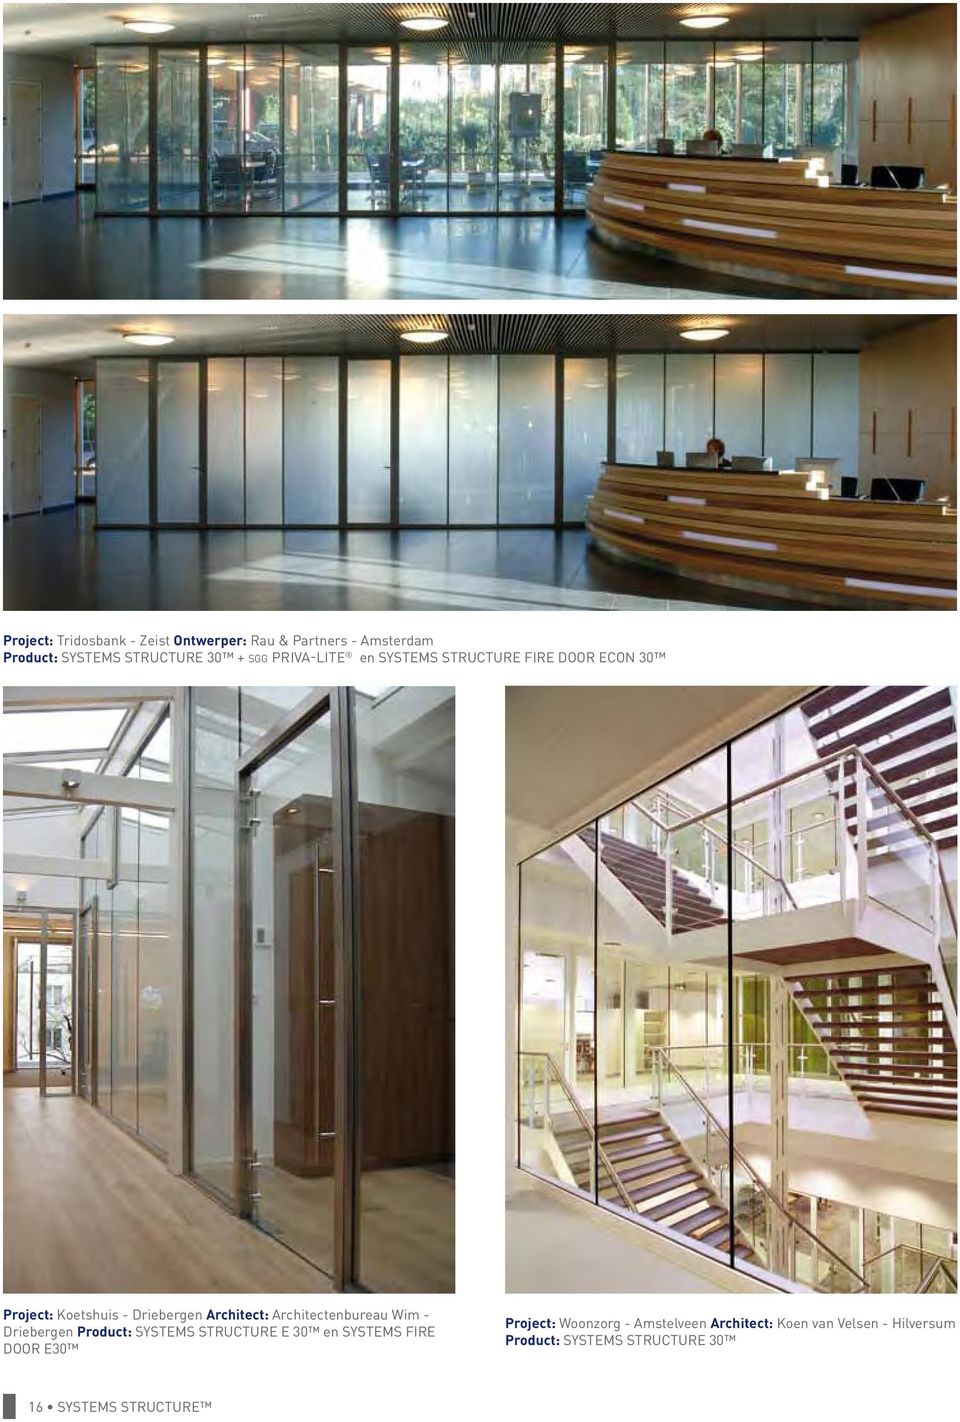 Architectenbureau Wim - Driebergen Product: SYSTEMS STRUCTURE E 30 en SYSTEMS FIRE DOOR E30 Project: